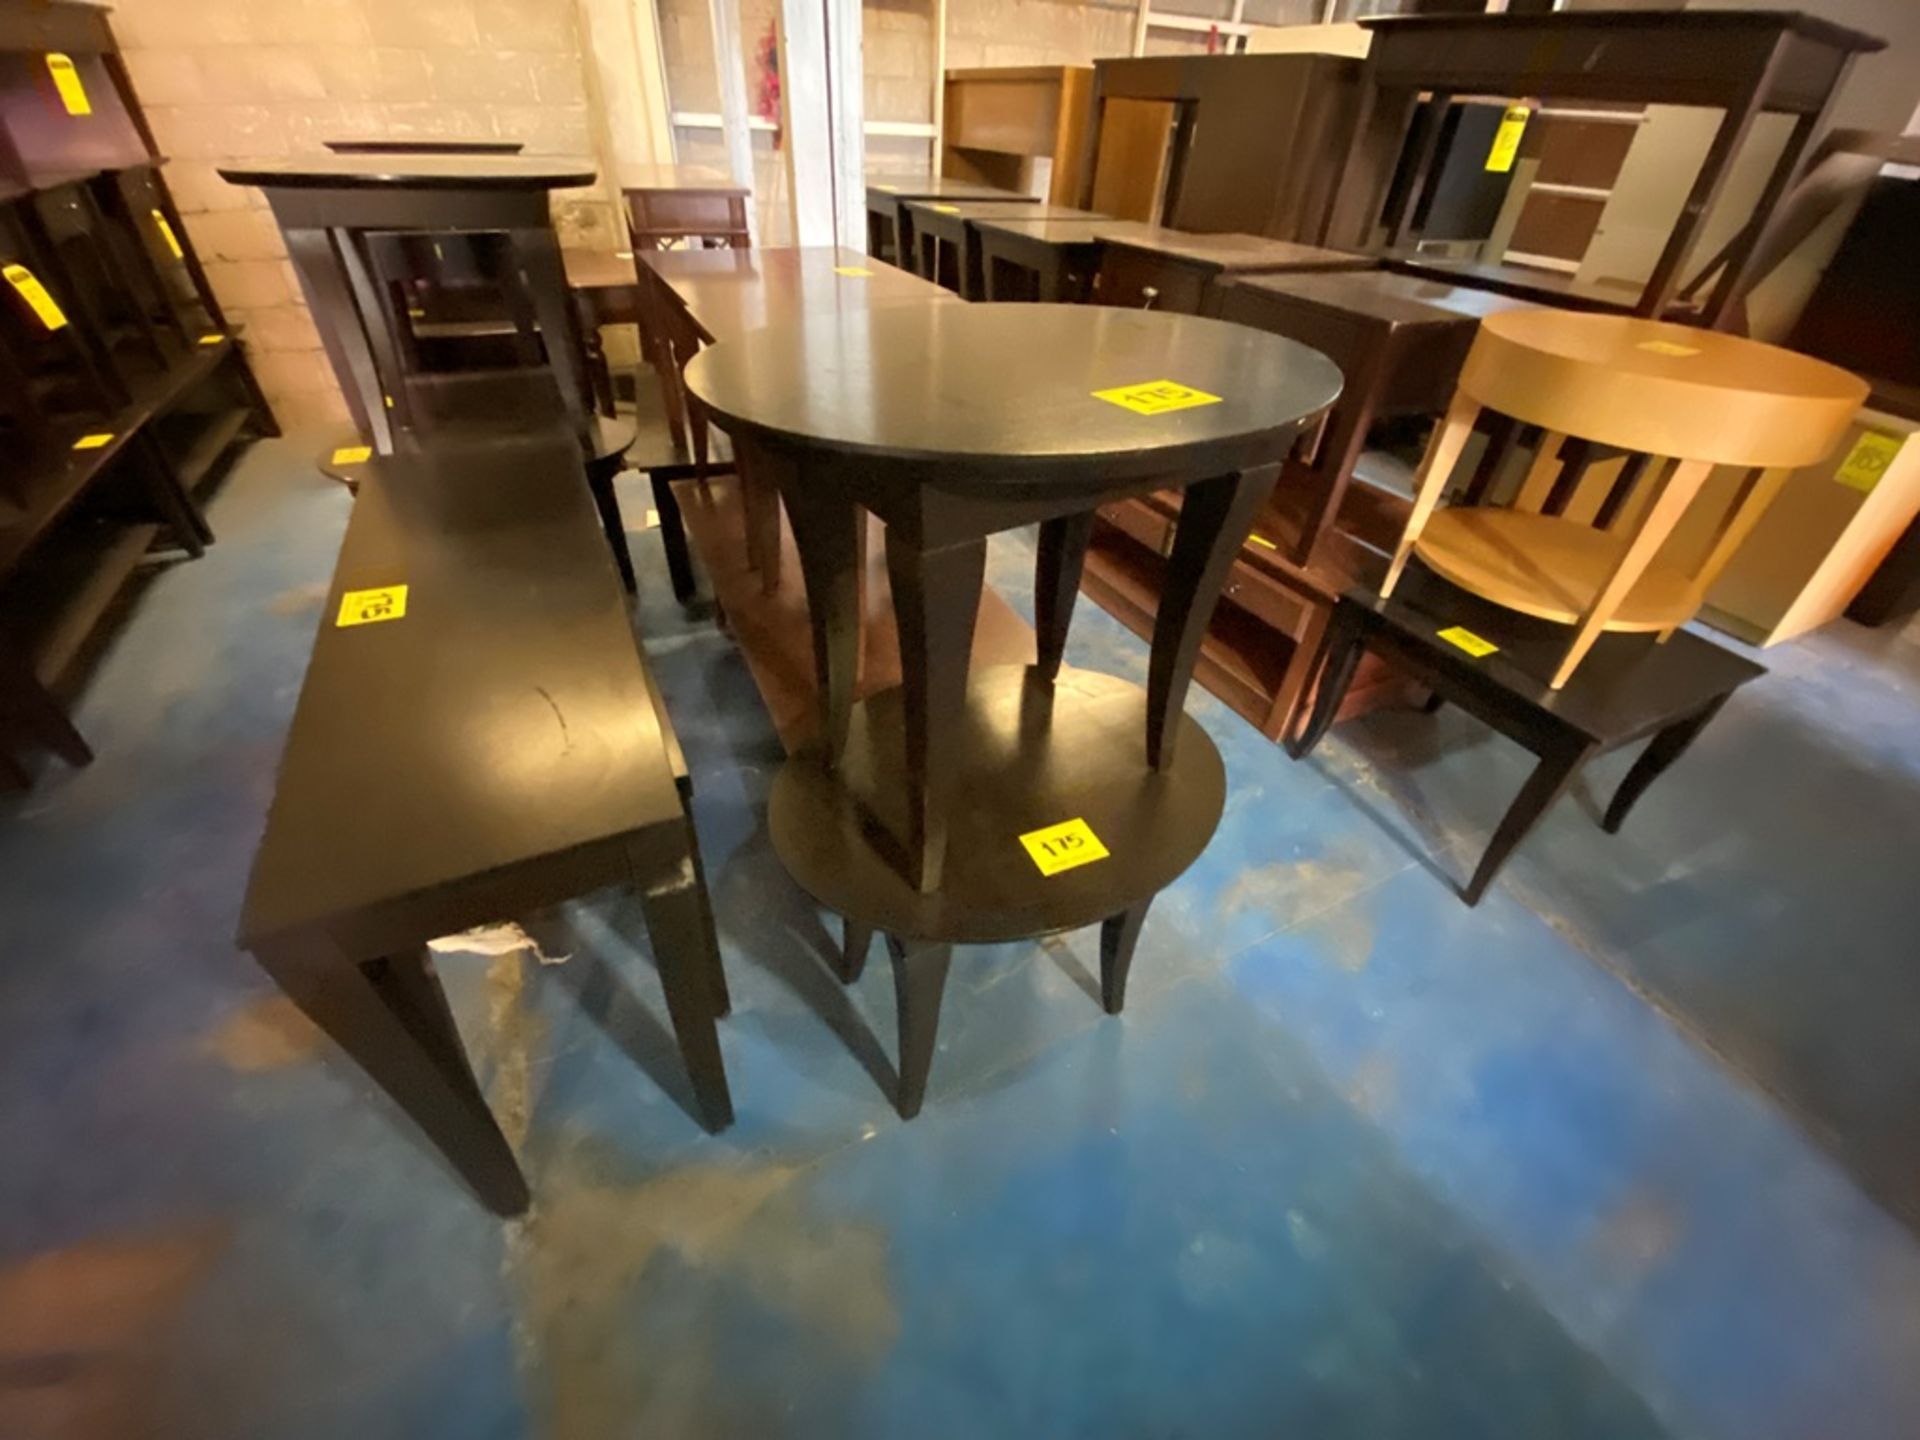 Lote Conformado por 2 mesas, Contiene; 1 Mesa Tipo Esquinero Ovalada de Madera Color Café 70x55x58 - Image 4 of 13